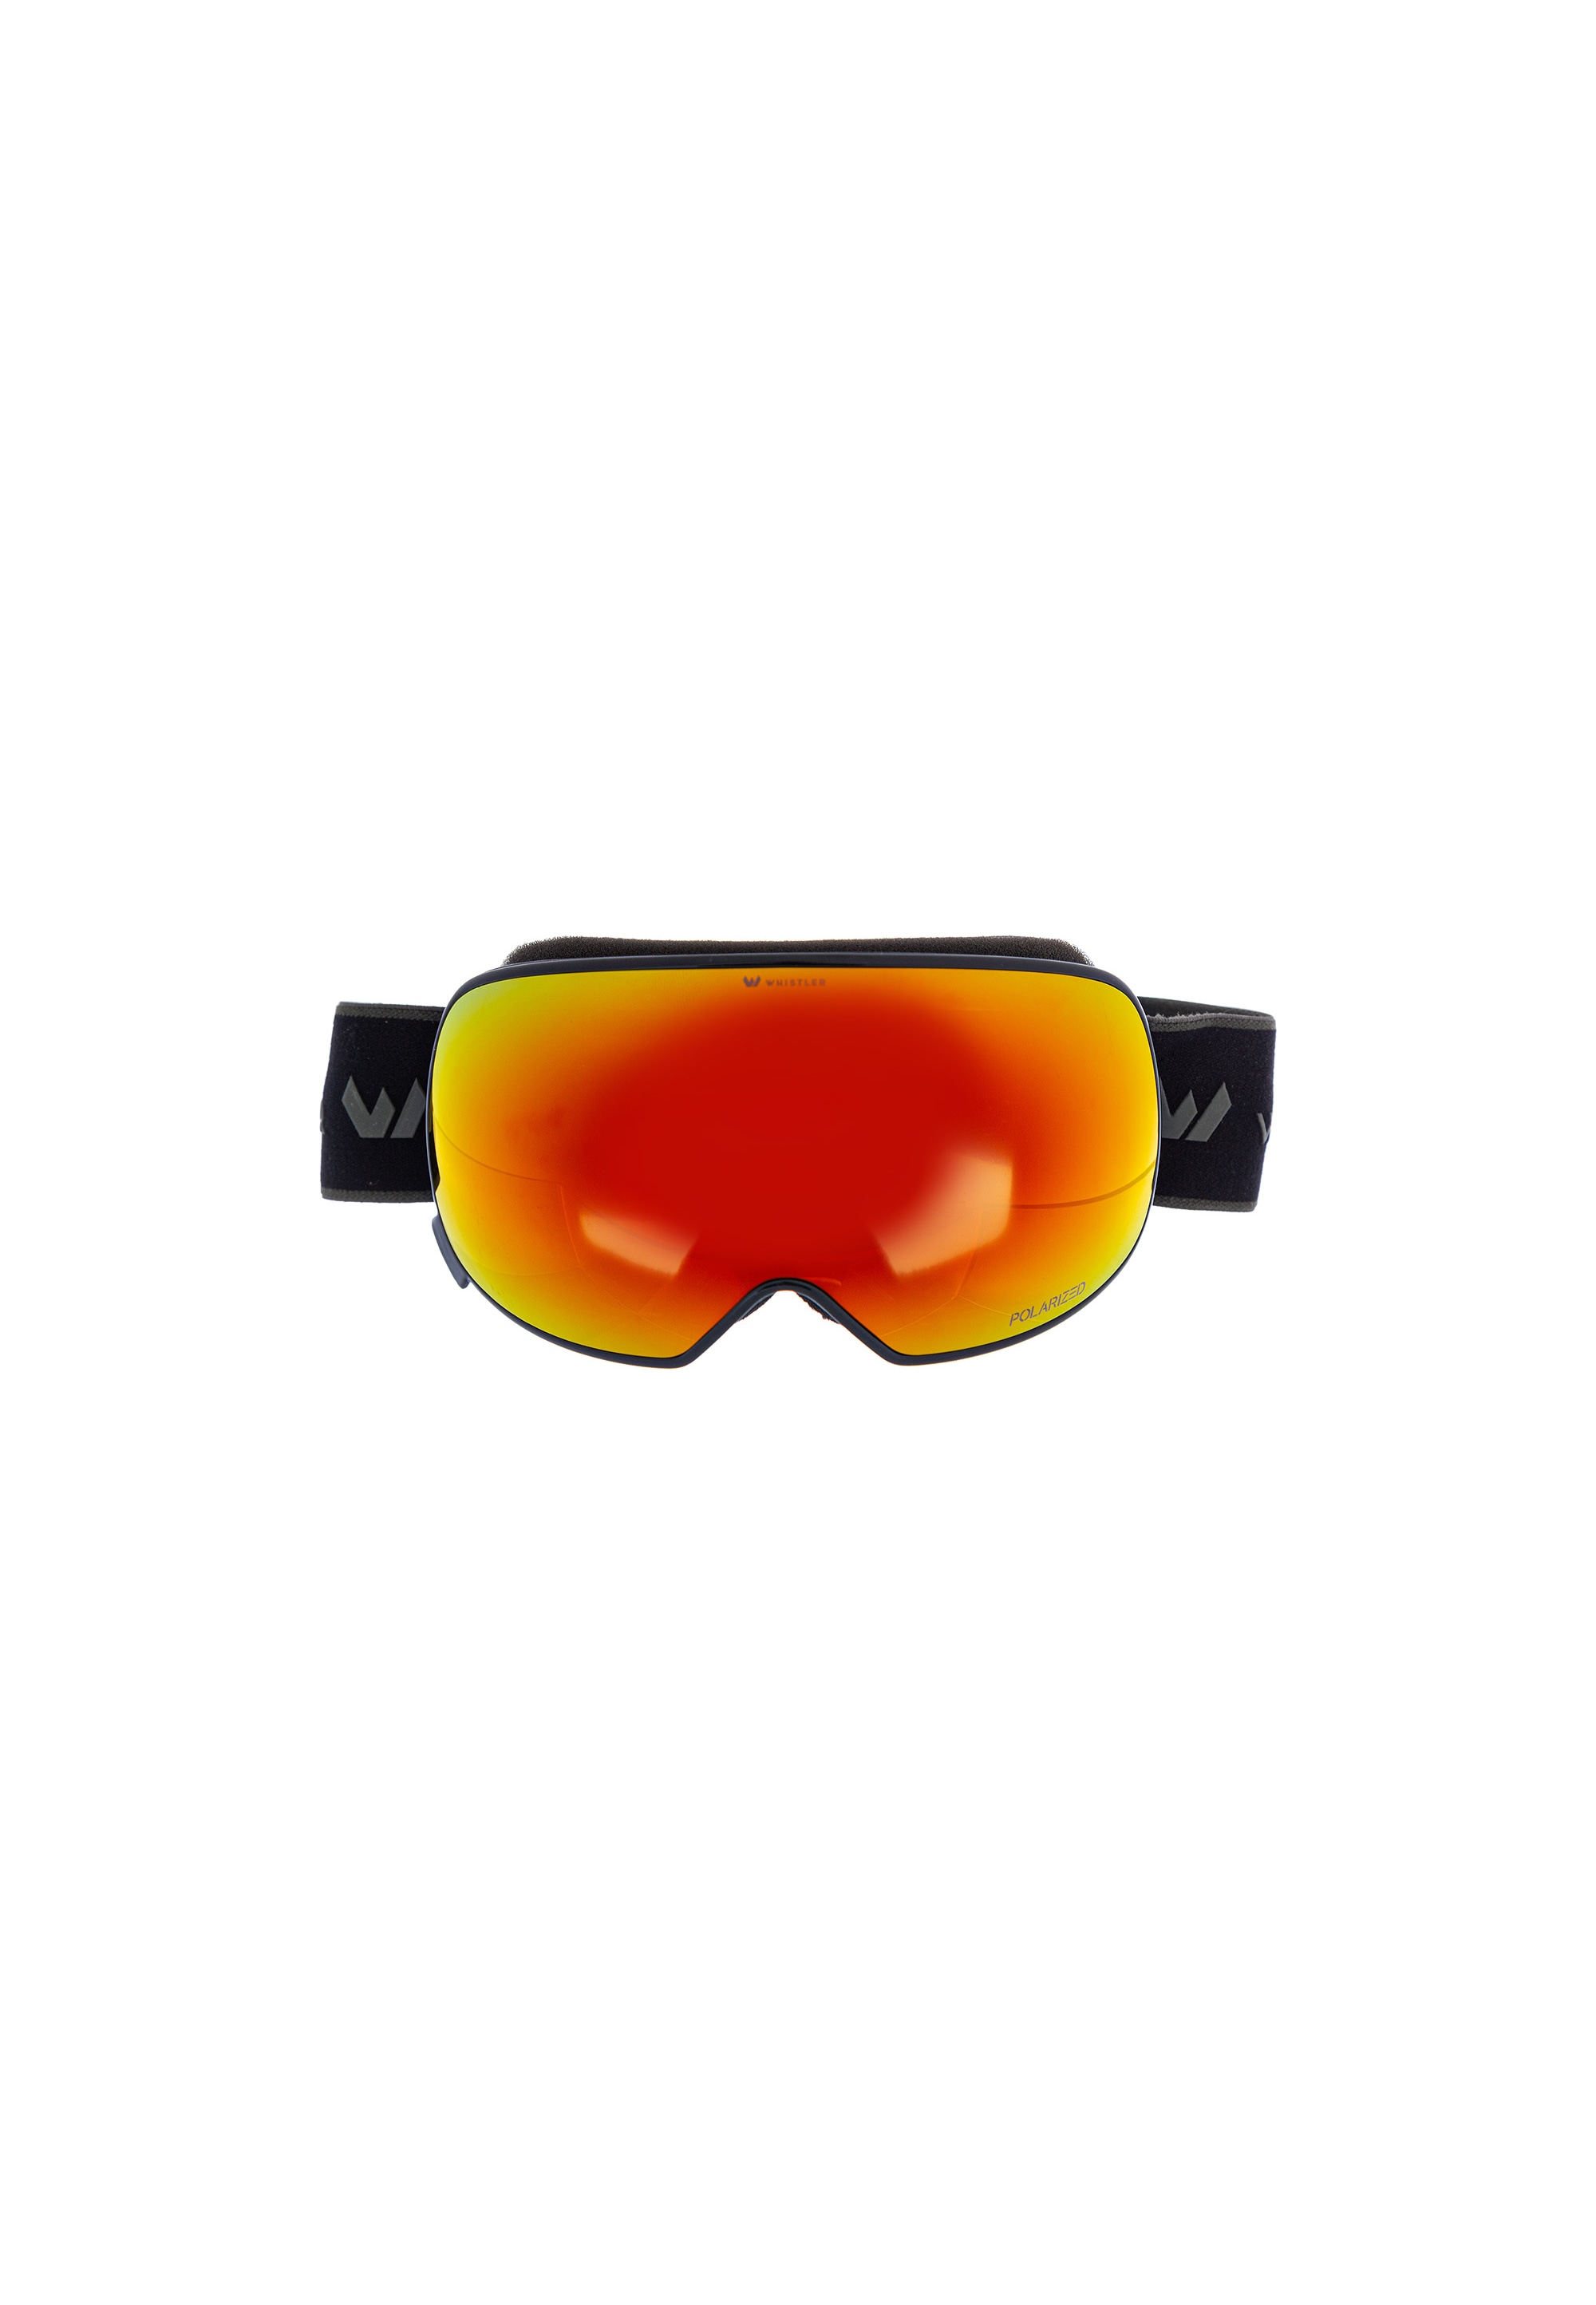 Sportbrillen » Sportausrüstung -- Brillen BAUR Online im | Sportshop